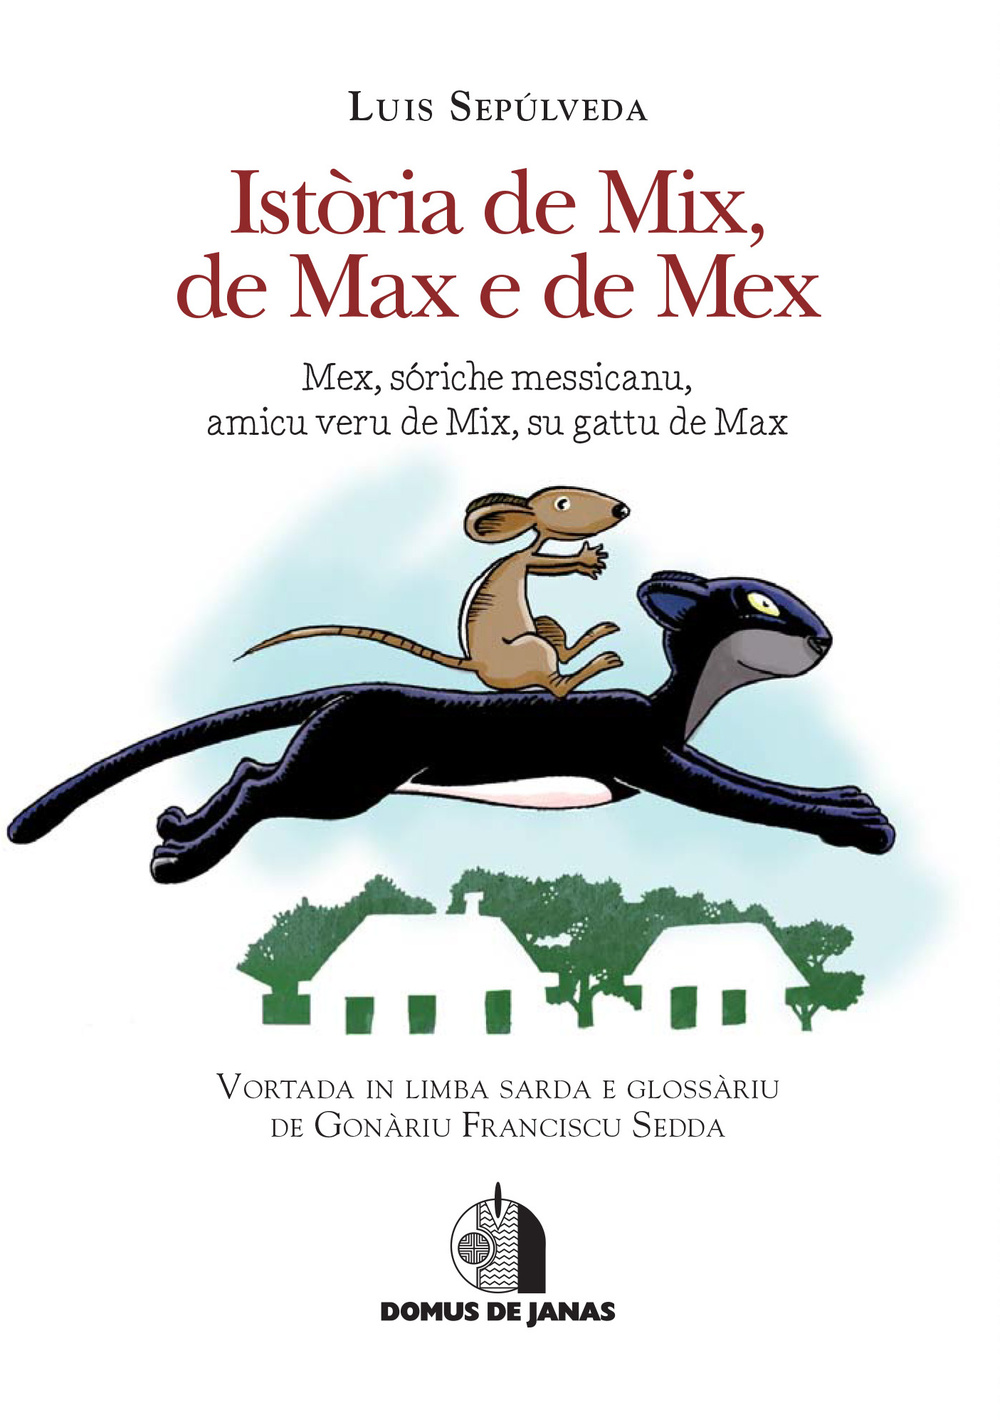 Isròria de Mix, de Max e de Mex